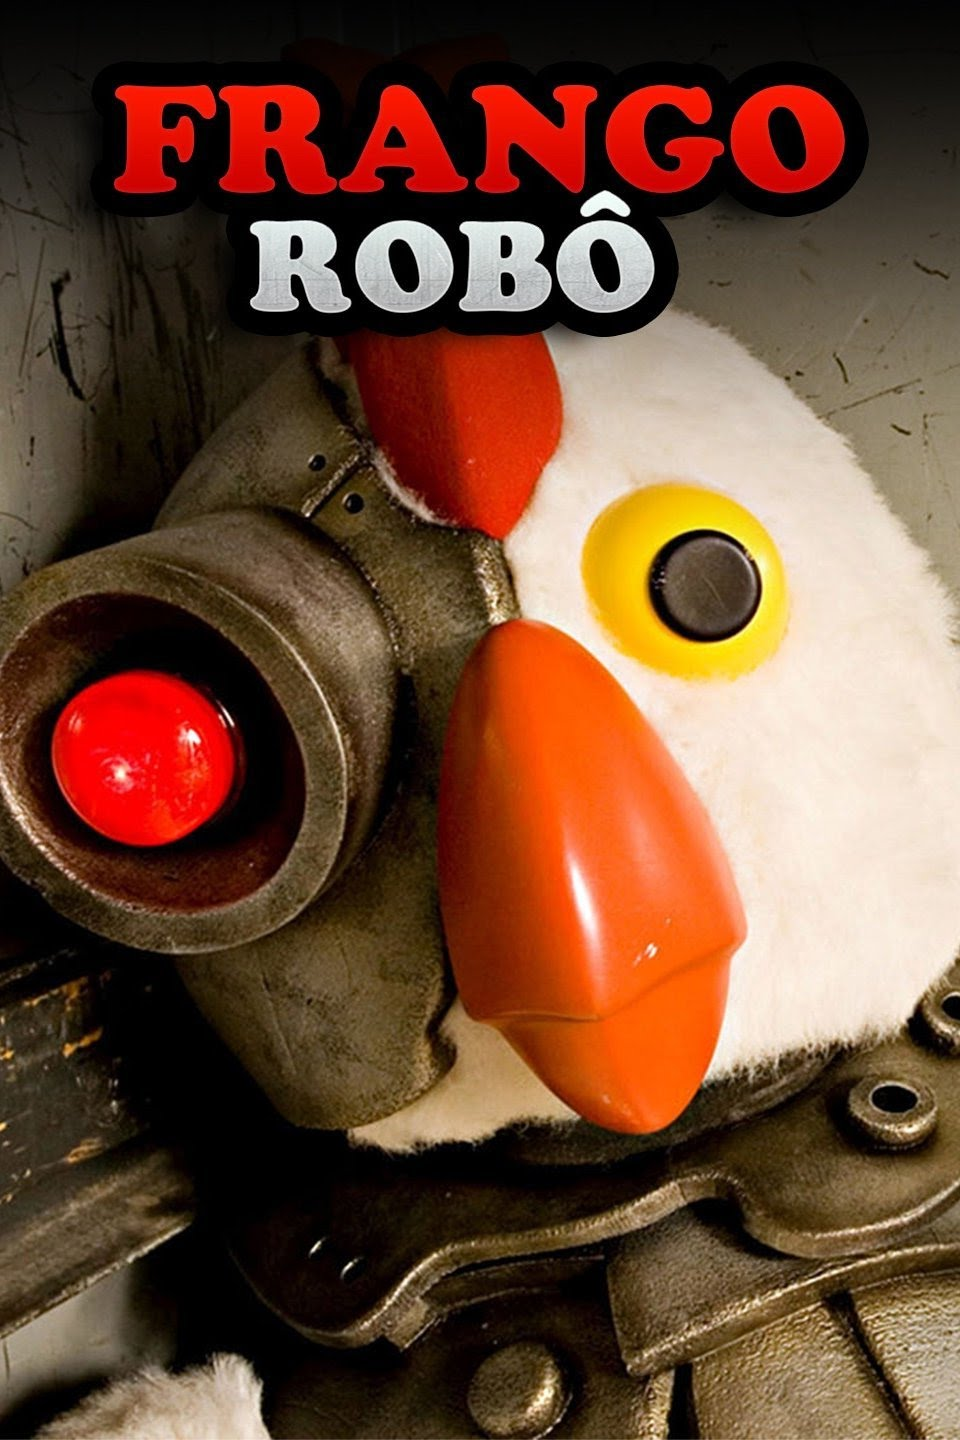 Frango Robô - A Morte de He-Man (Dublado), Robot Chicken #RobotChicke